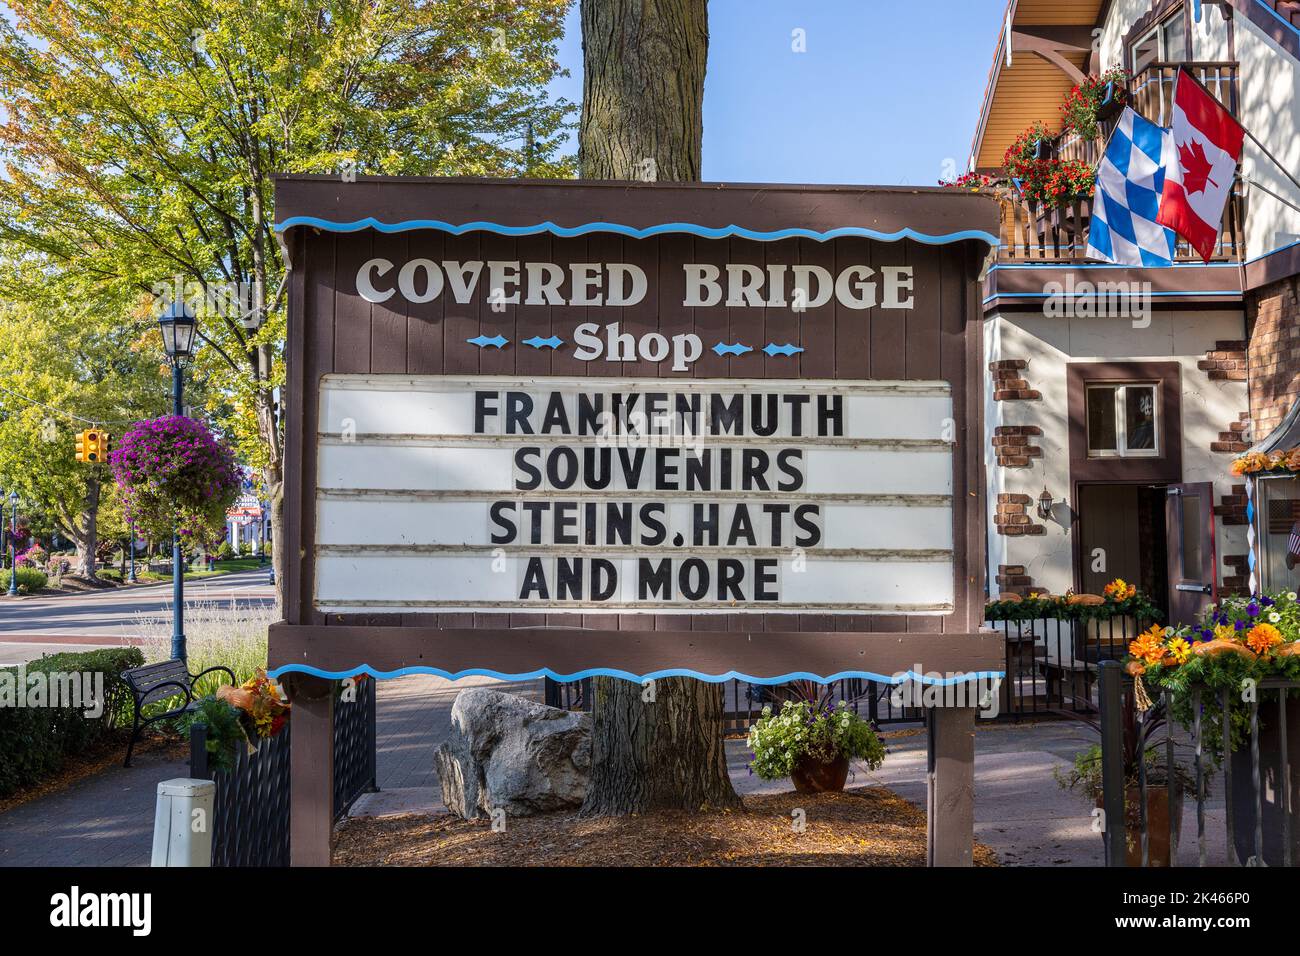 Frankenmuth Covered Bridge Shop panneau vendre des souvenirs touristiques à Frankenmuth Michigan USA Banque D'Images